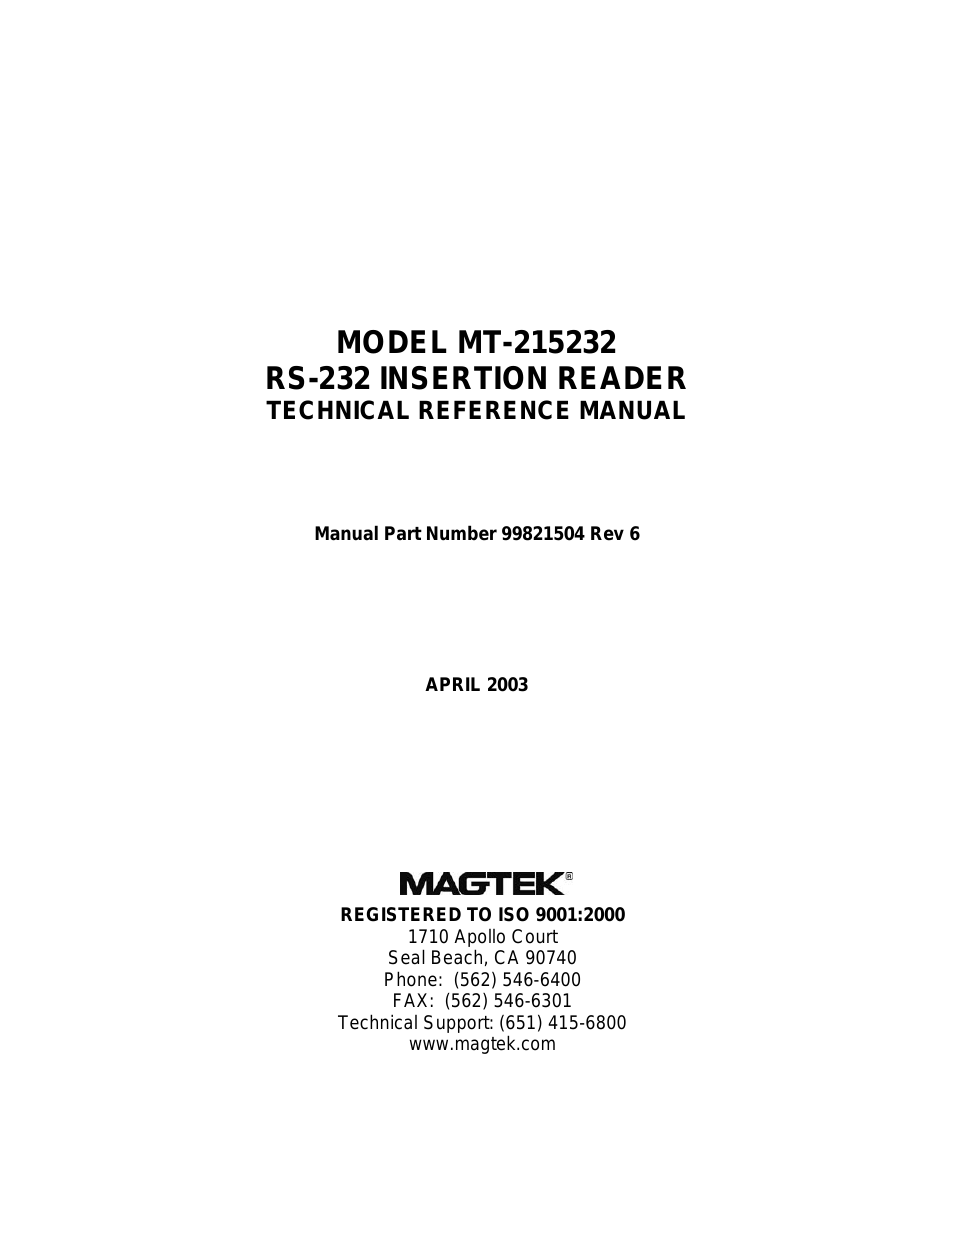 MT-215232 RS-232